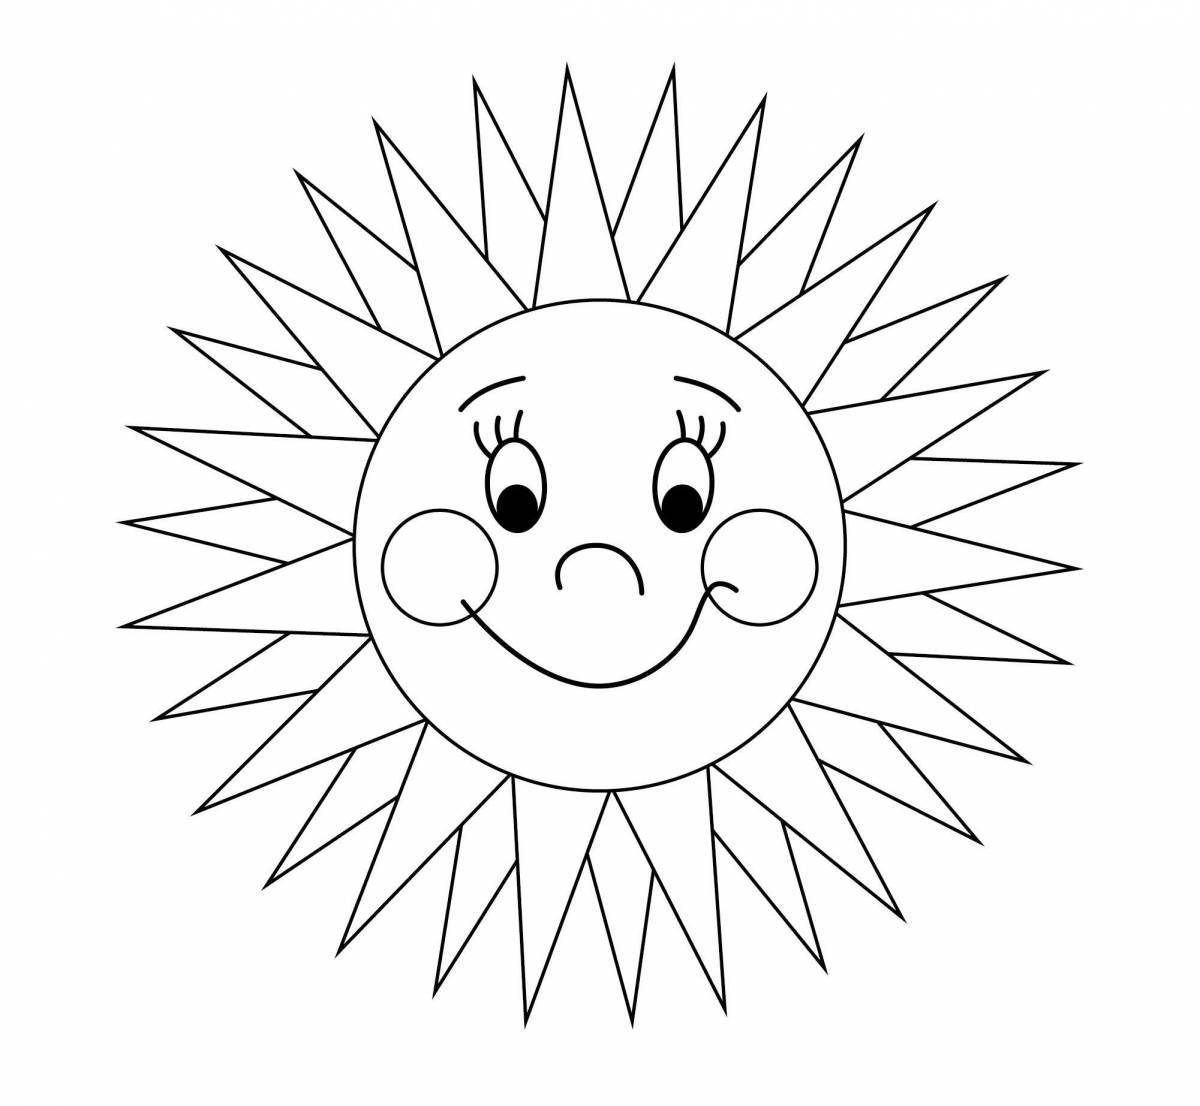 Увлекательная раскраска солнце для детей 4-5 лет